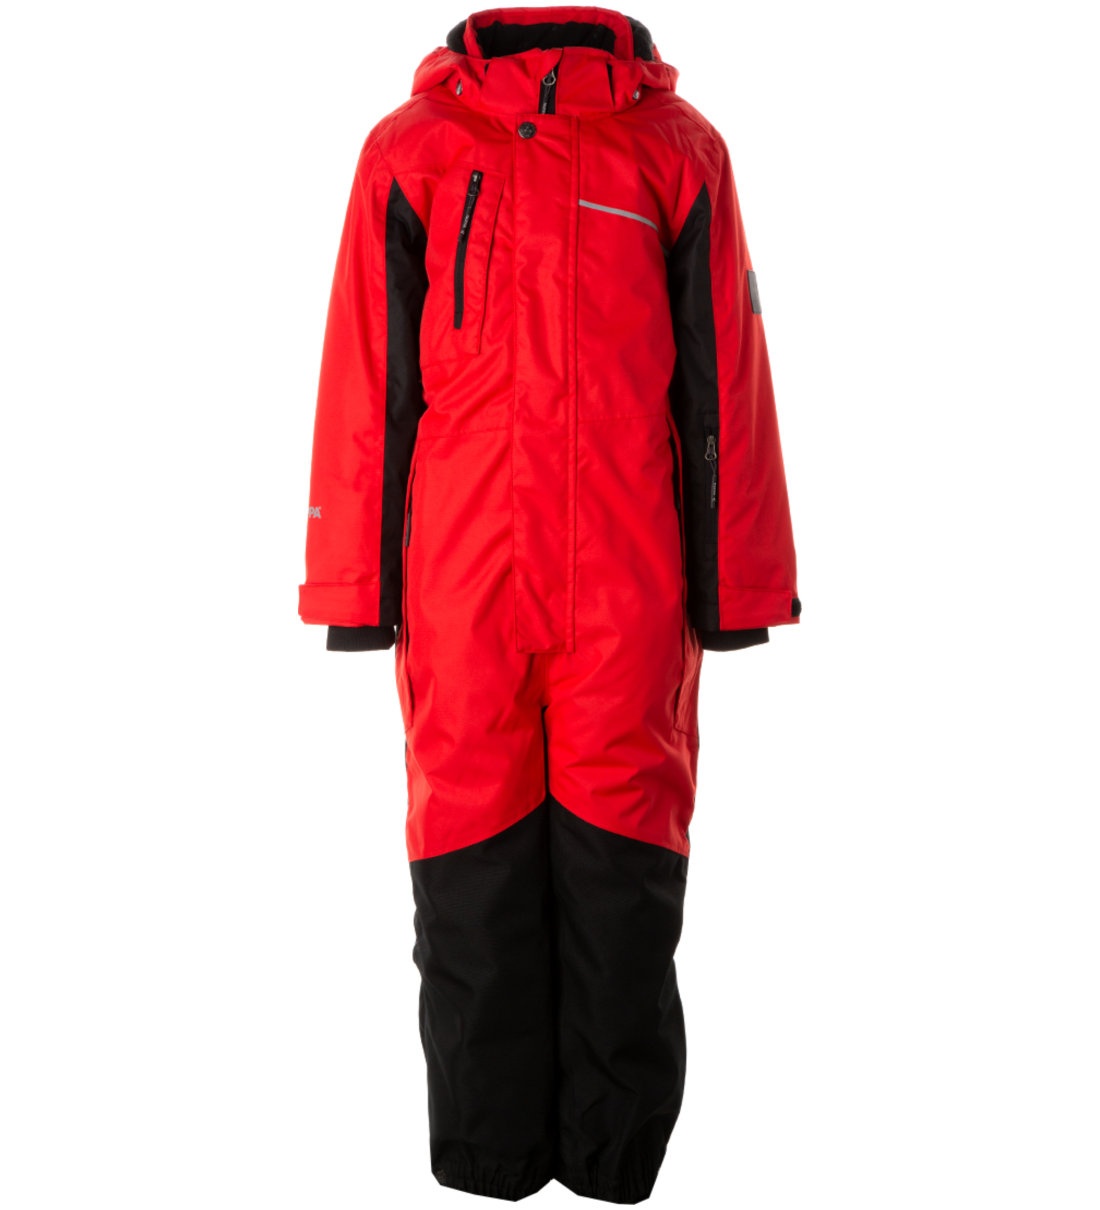 Комбинезон детский Huppa Mooley 3, красный, черный, 134 комплект верхней одежды детский huppa dante 32366 рисунок морская волна темно серый 158